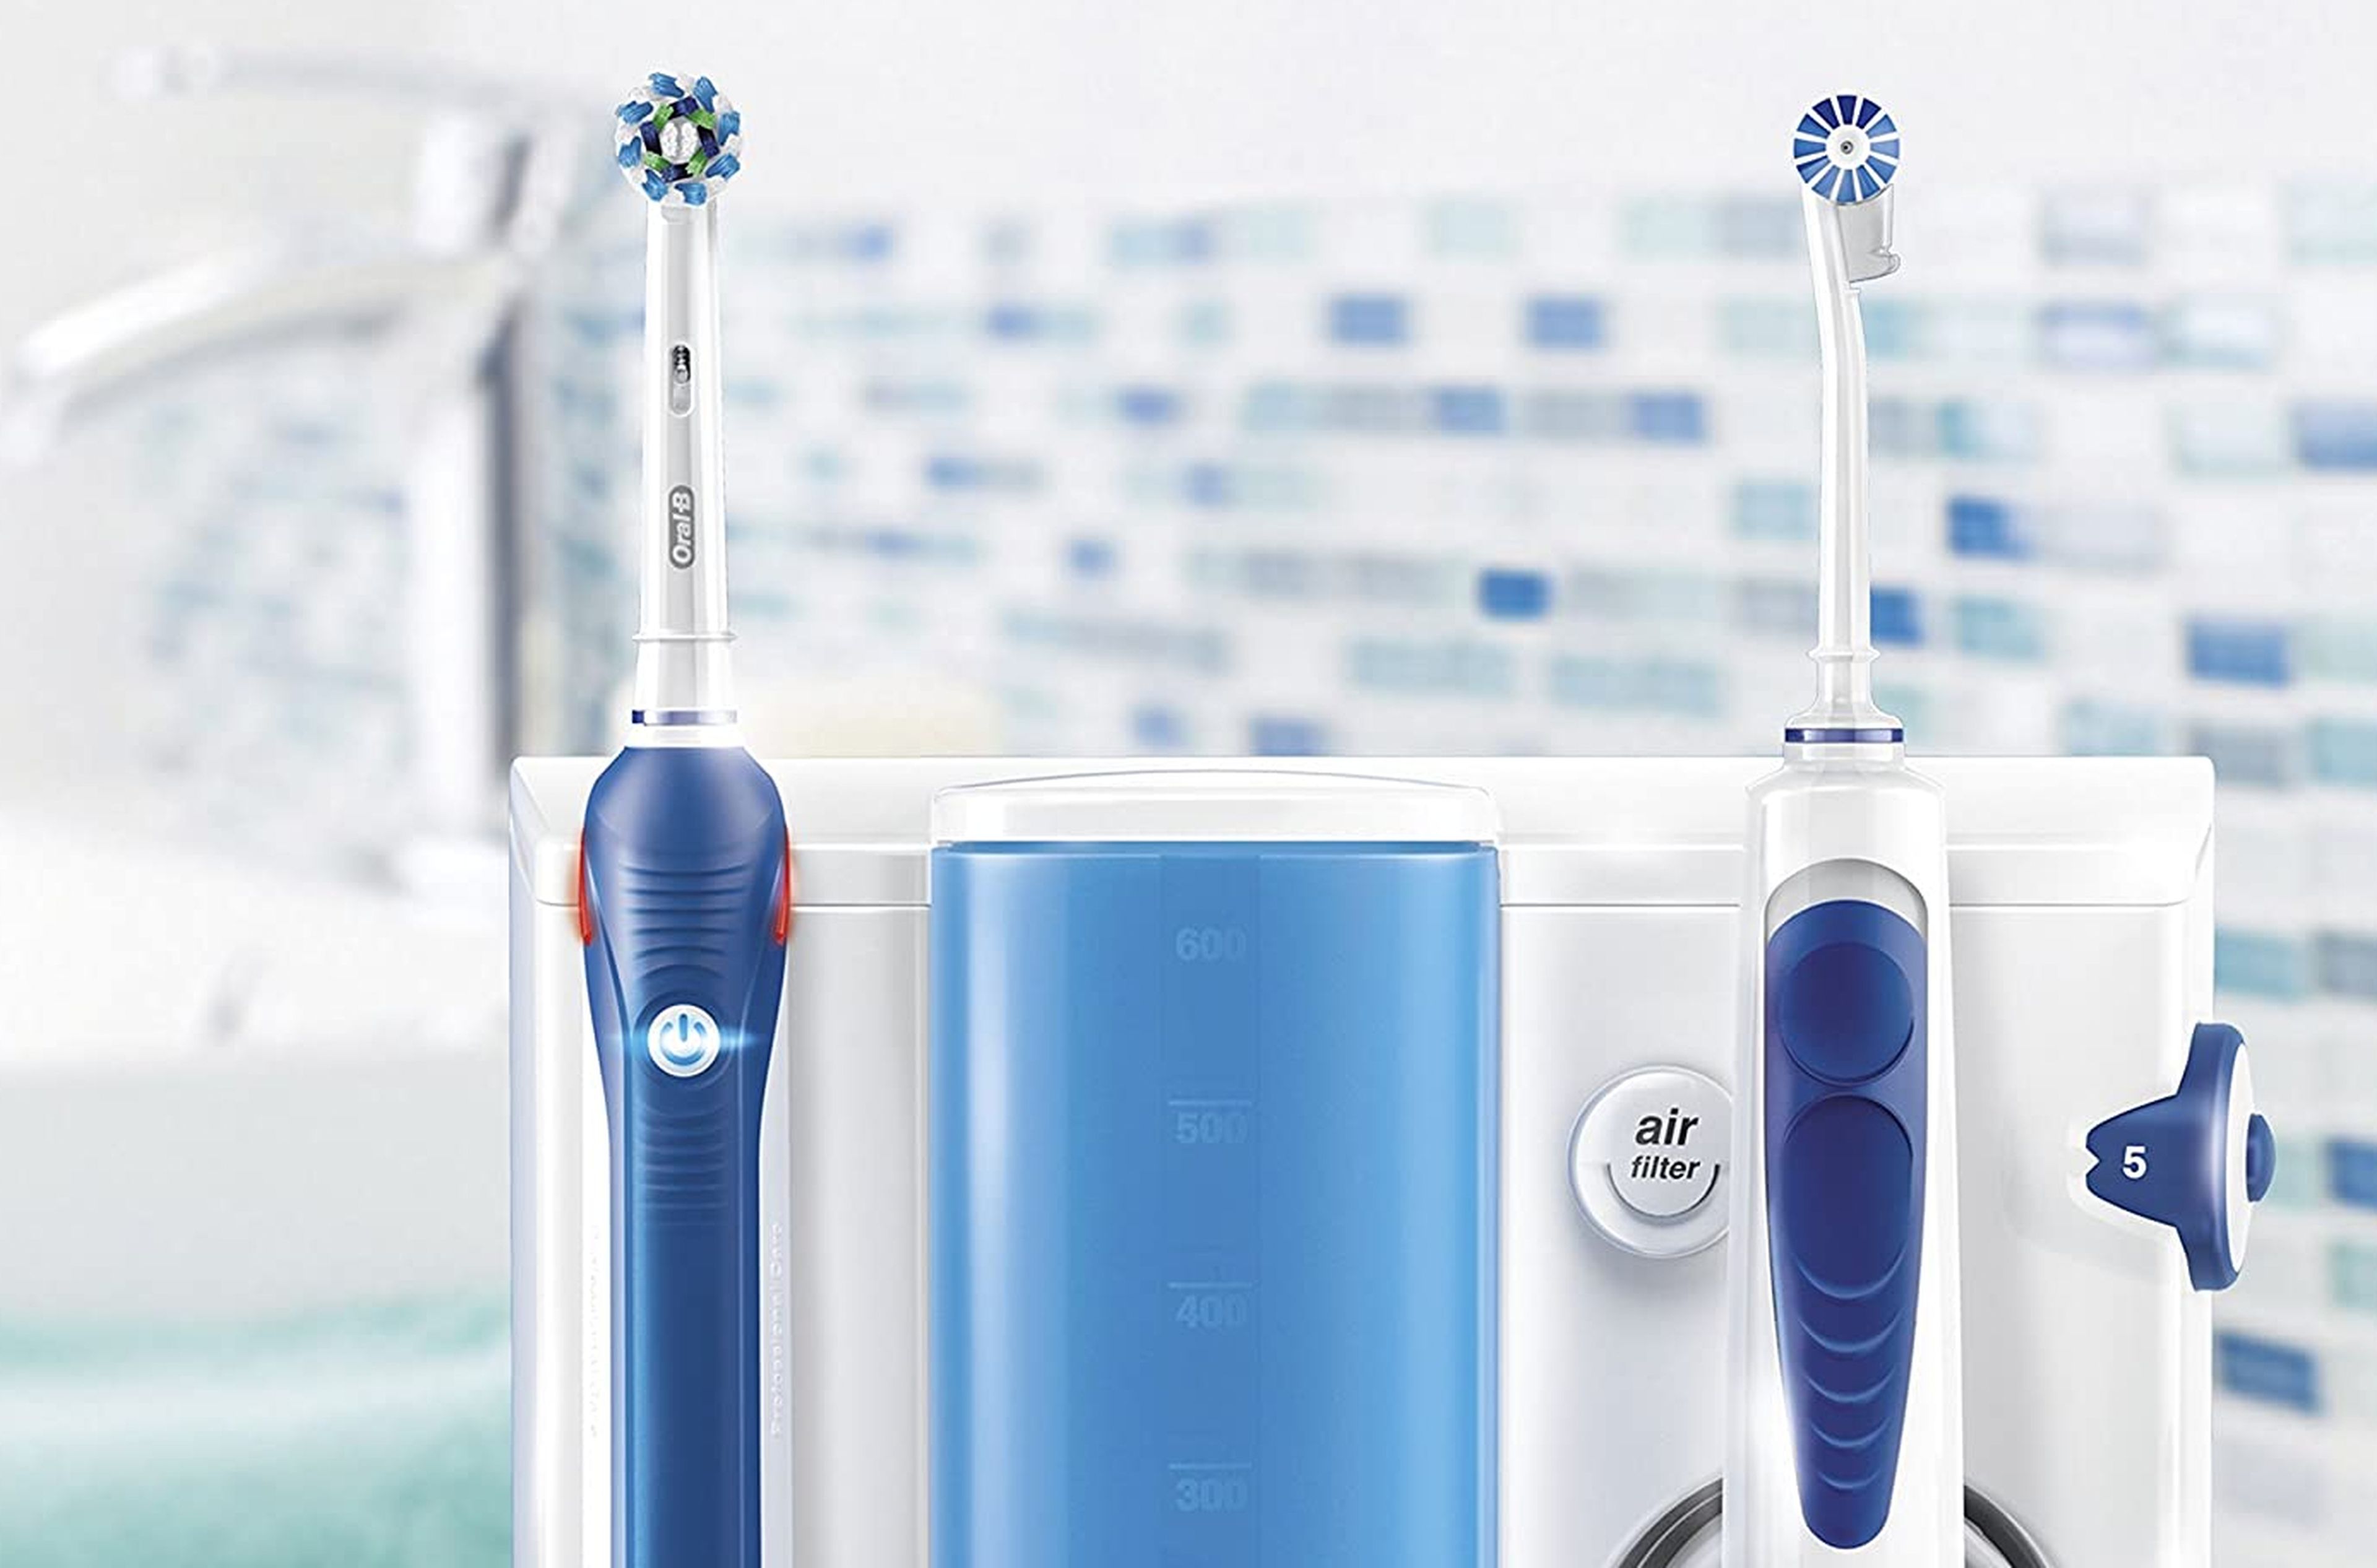 Comprar OralB Pack Cepillos Eléctricos Limpieza Profesional al Mejor Precio